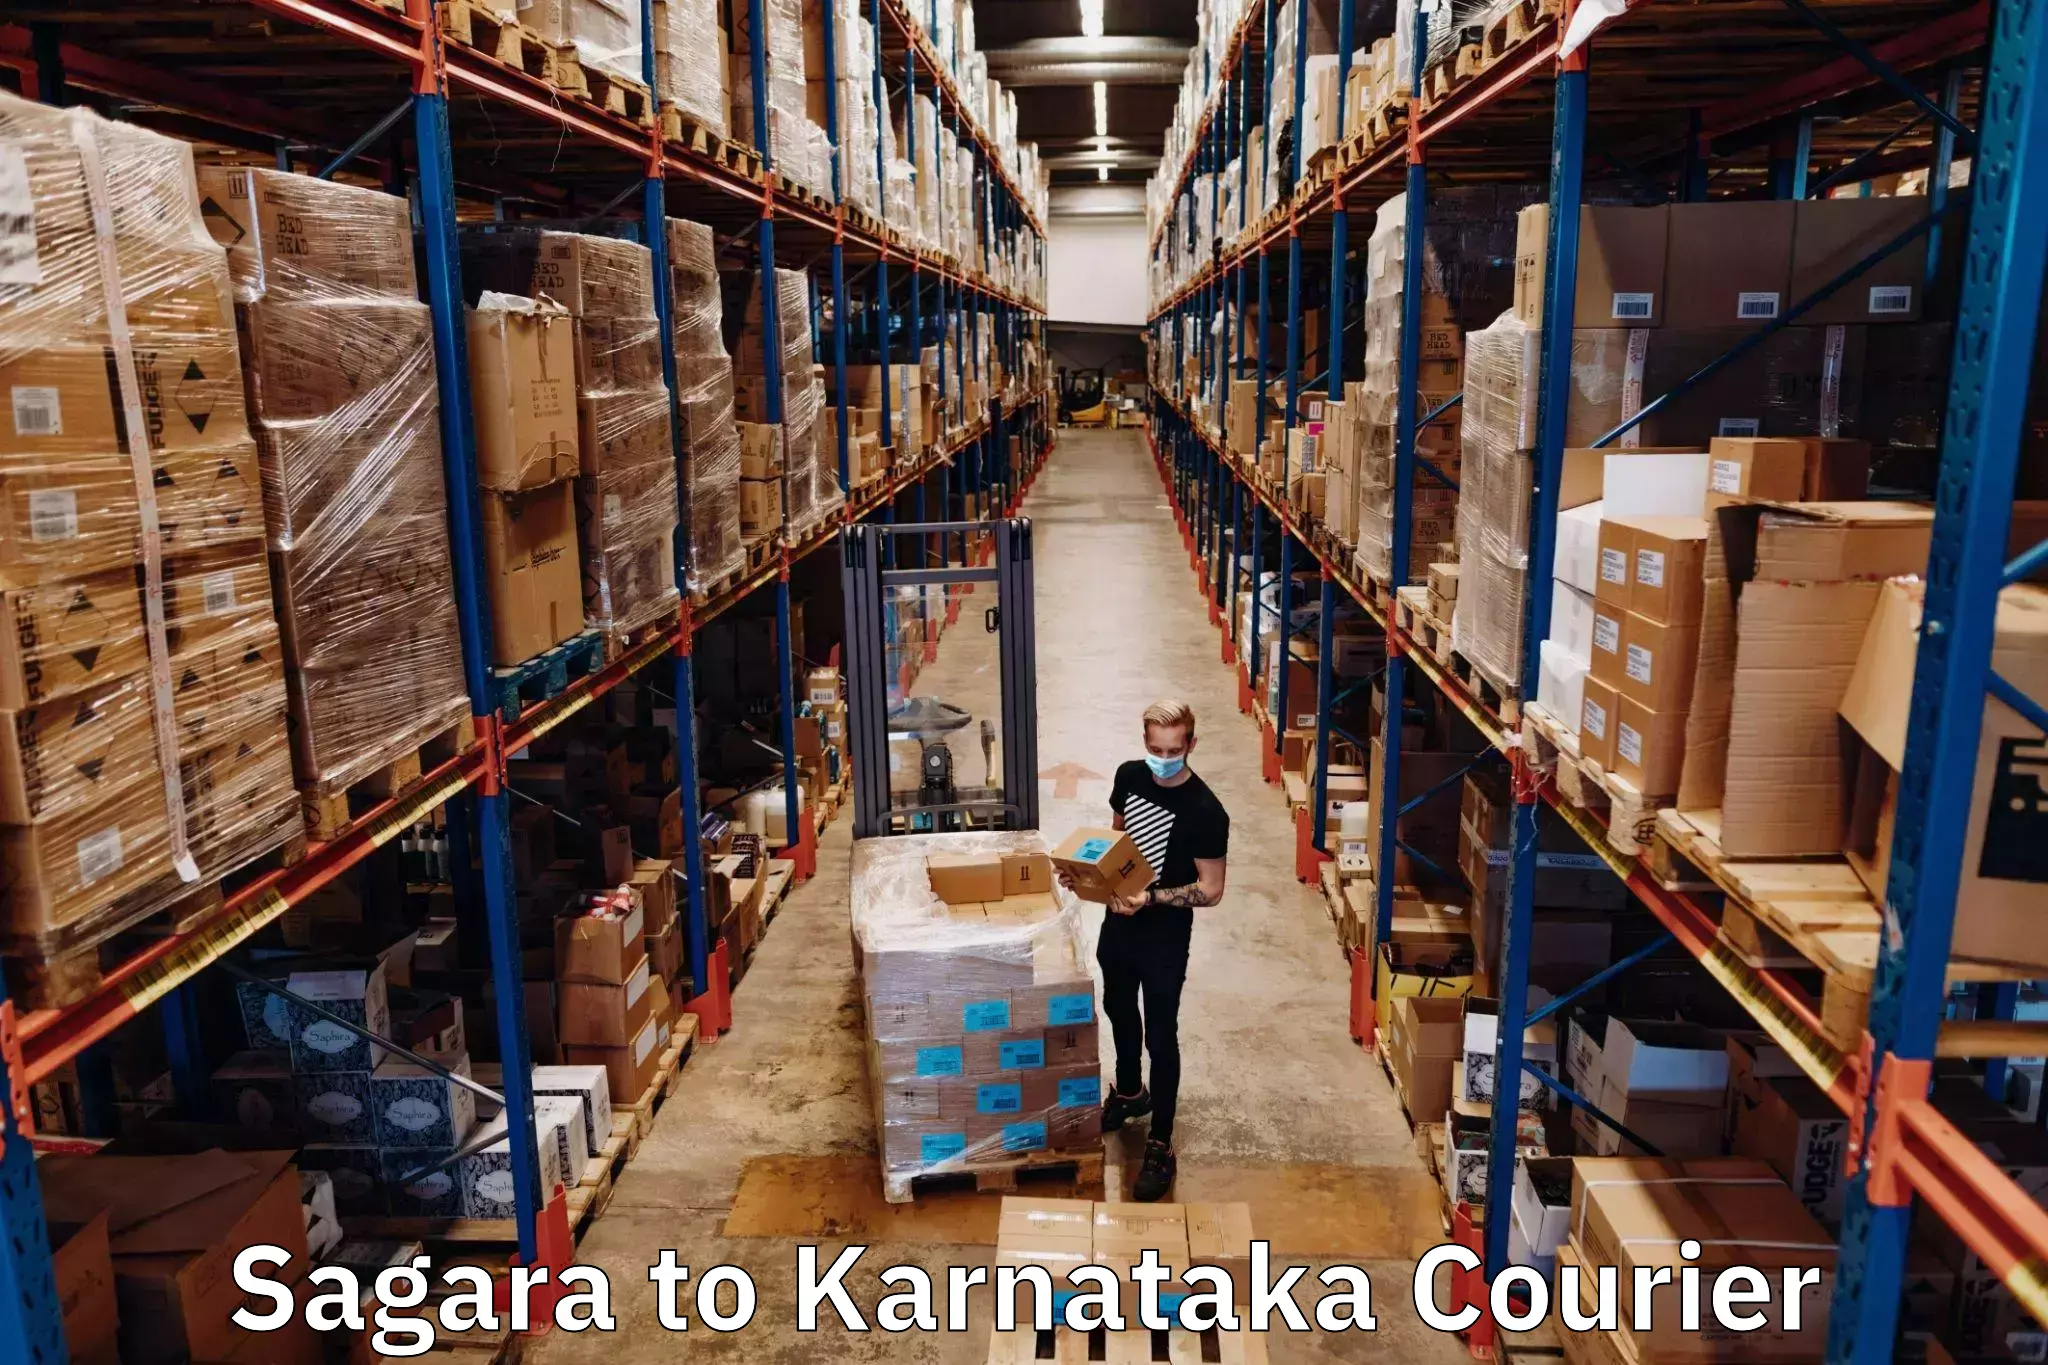 Nationwide courier service Sagara to Karnataka